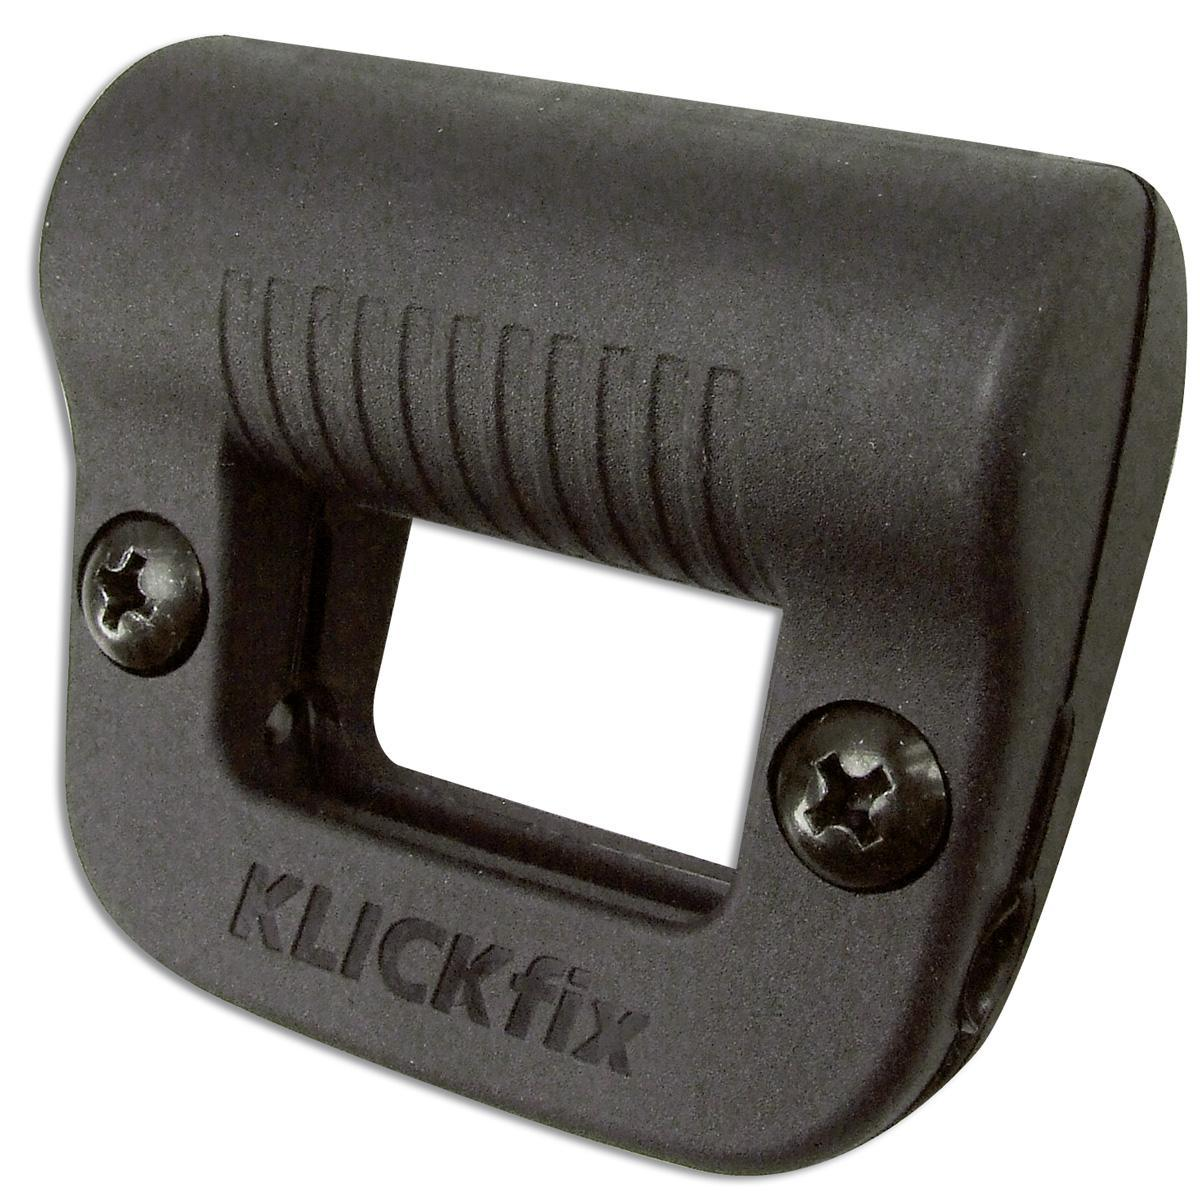 KLICKfix Lightclip Adapter